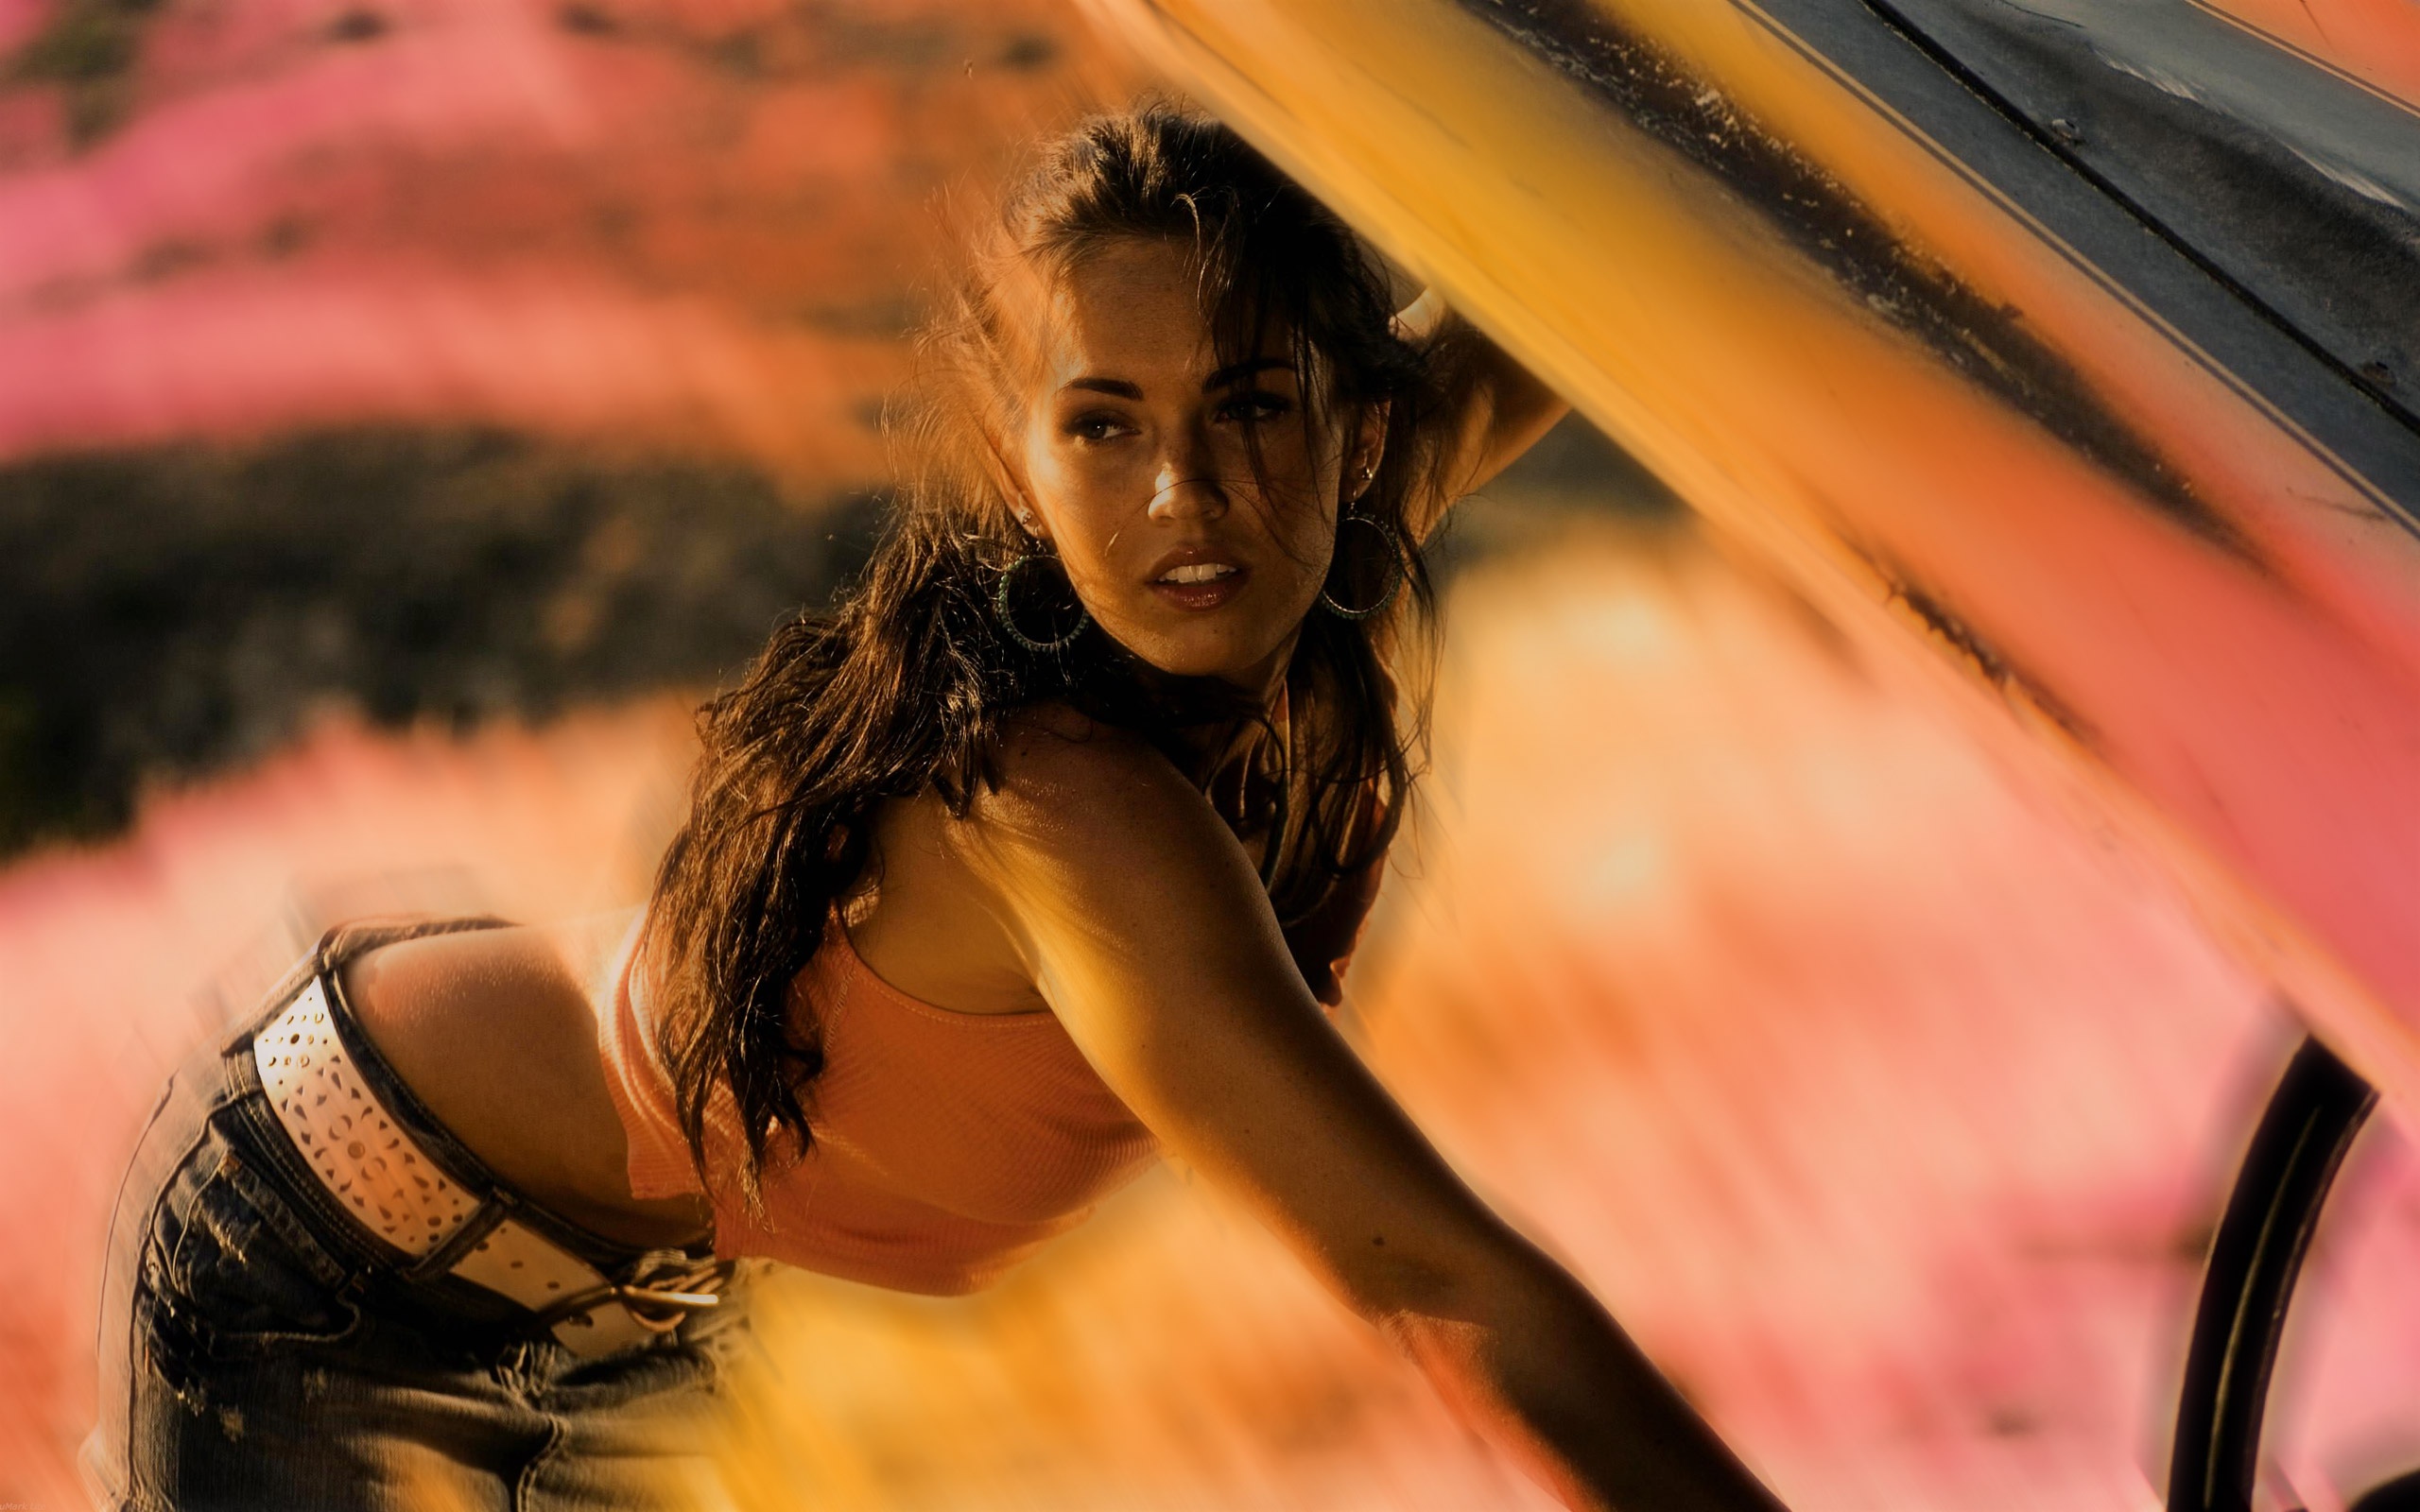 Descarga gratuita de fondo de pantalla para móvil de Megan Fox, Transformers, Películas.